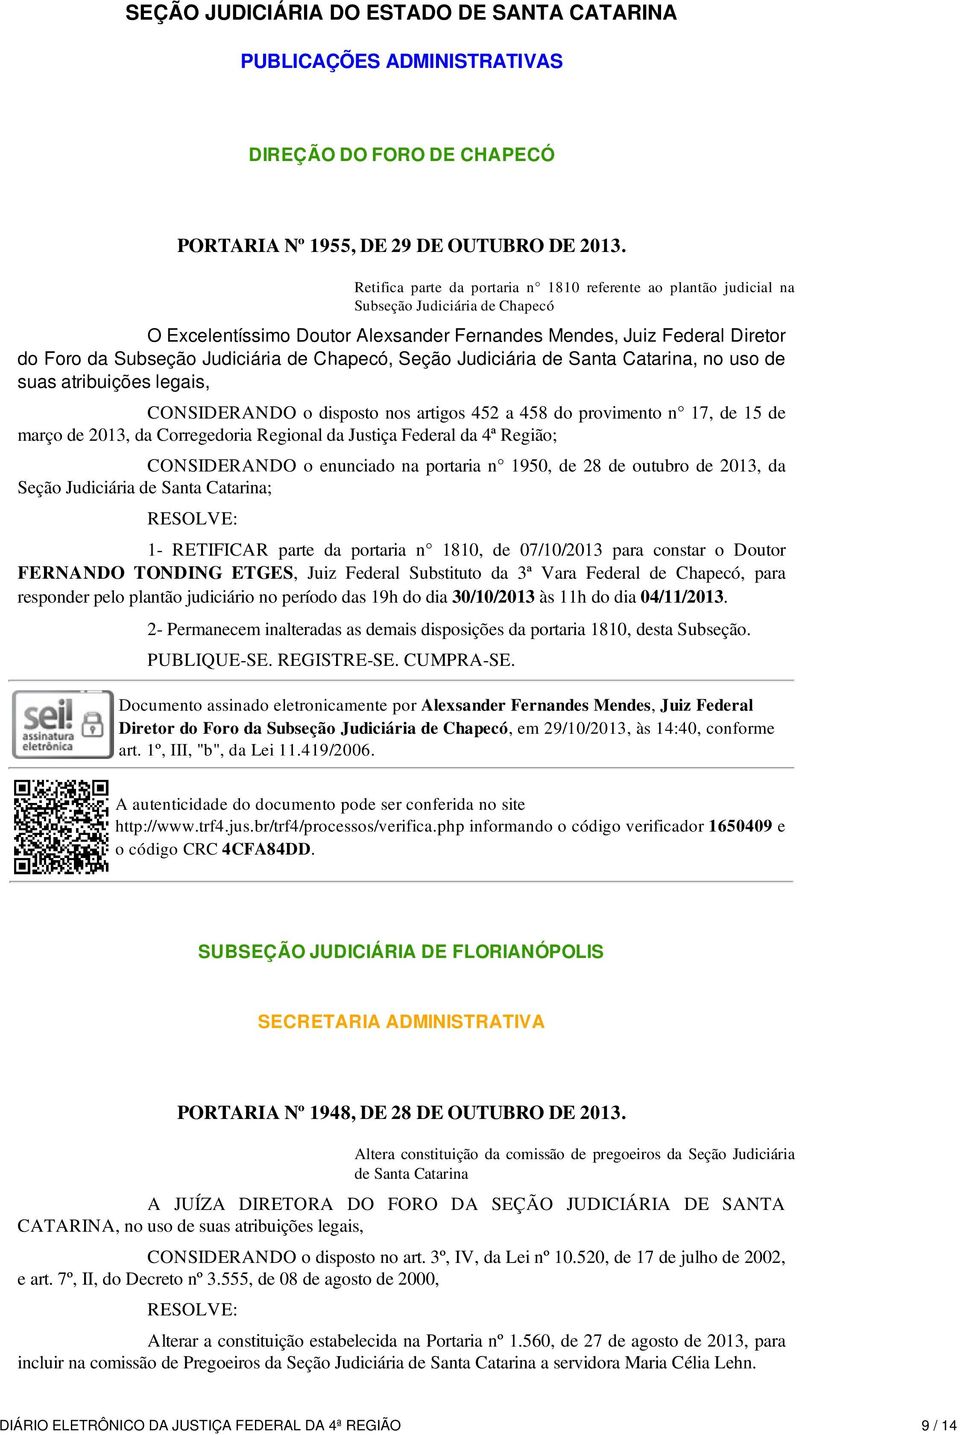 Judiciária de Chapecó, Seção Judiciária de Santa Catarina, no uso de suas atribuições legais, CONSIDERANDO o disposto nos artigos 452 a 458 do provimento n 17, de 15 de março de 2013, da Corregedoria